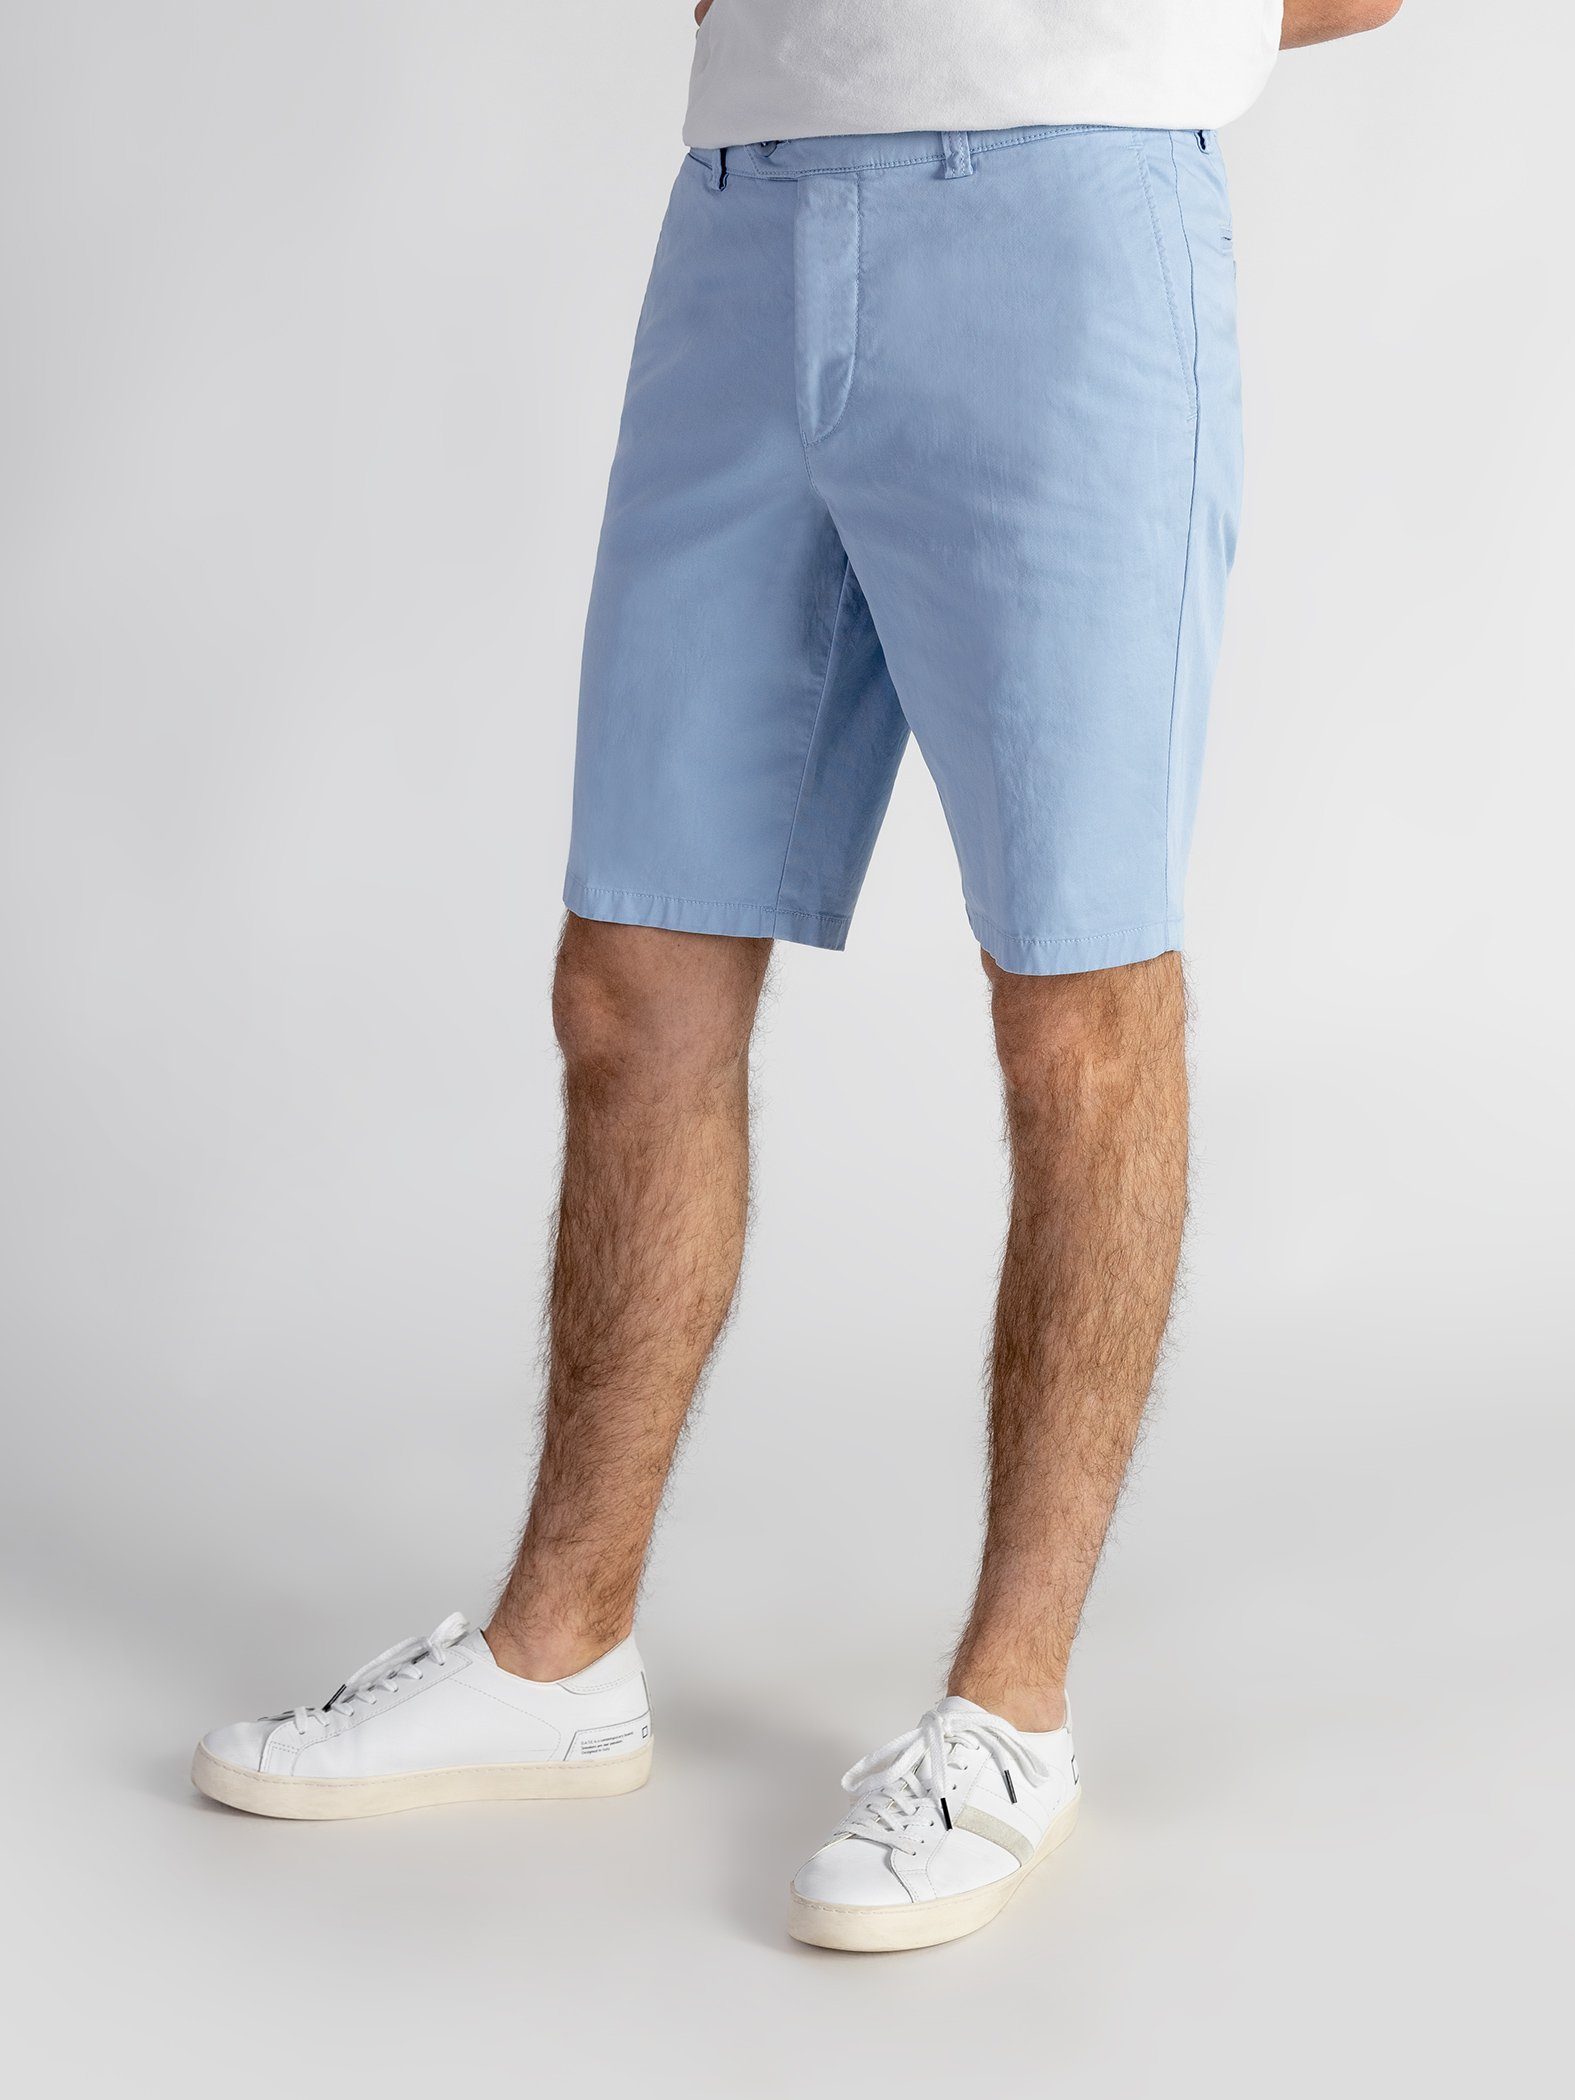 TwoMates Shorts Shorts mit elastischem Bund, Farbauswahl, GOTS-zertifiziert hellblau | Sportshorts